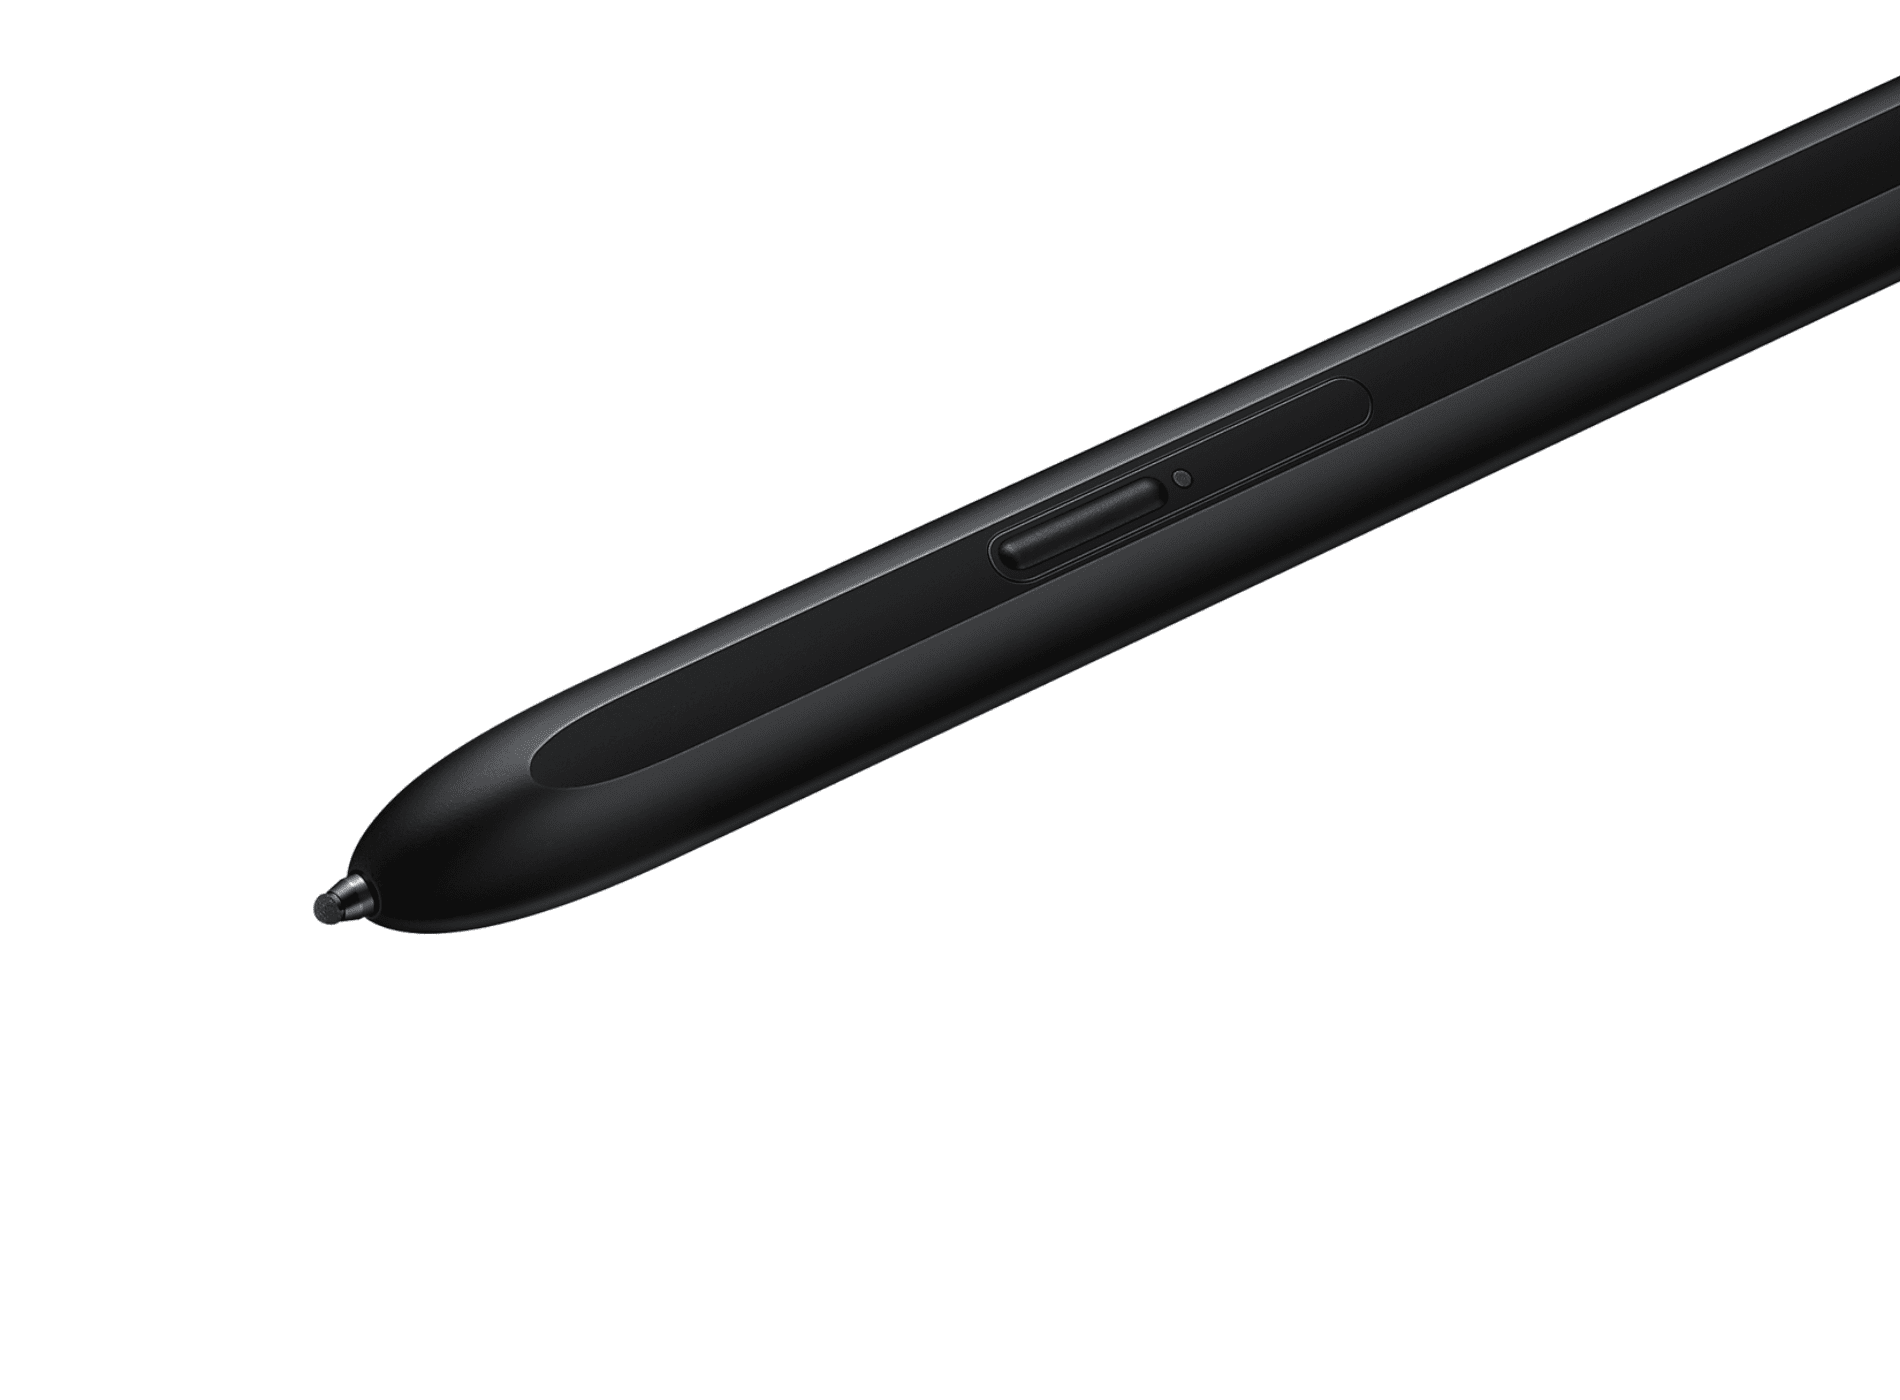 Características de un Lápiz digitalizador modelo S Pen Samsung